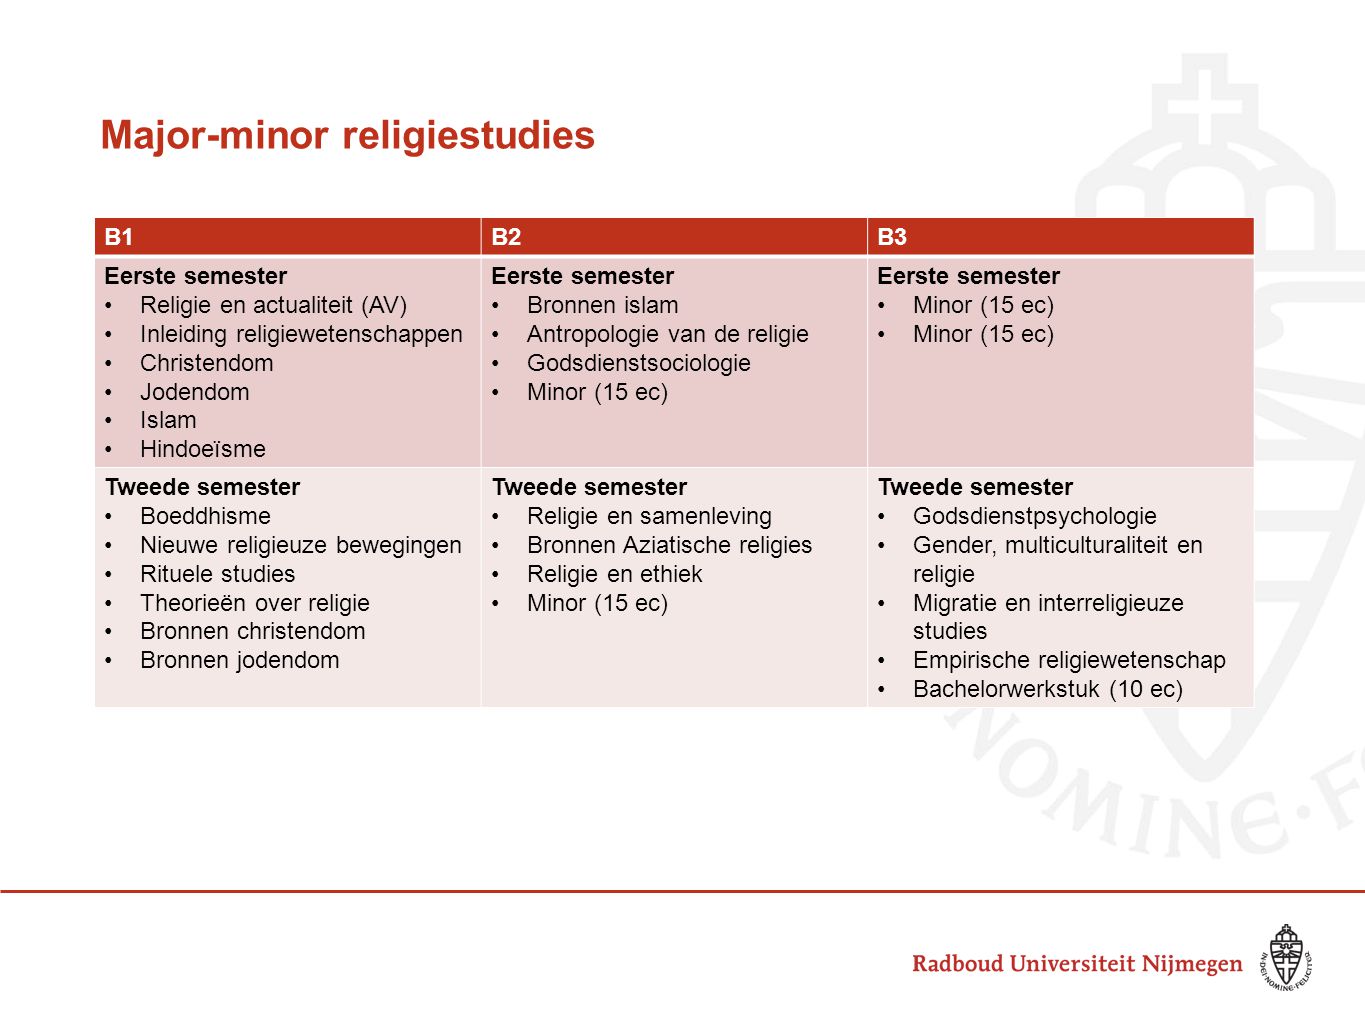 Major-minor religiestudies